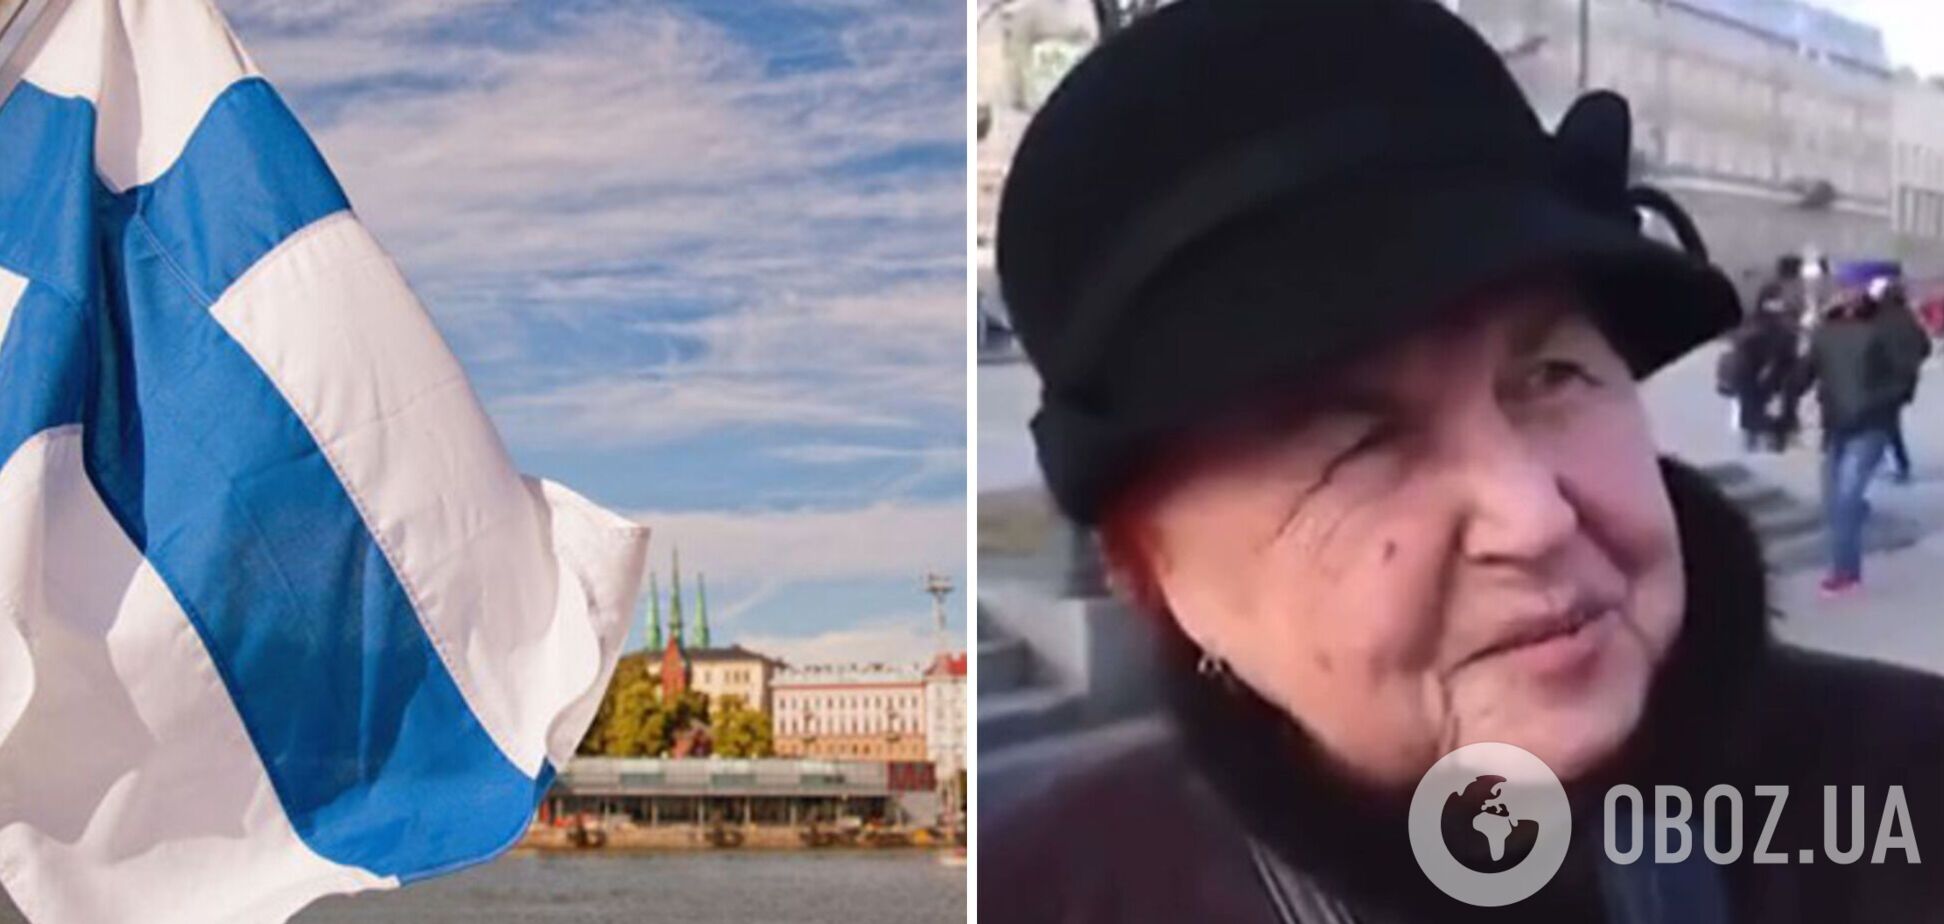 'Це ж наша територія': росіянка 'замахнулася' на Фінляндію та розмріялася про знищення Польщі. Відео